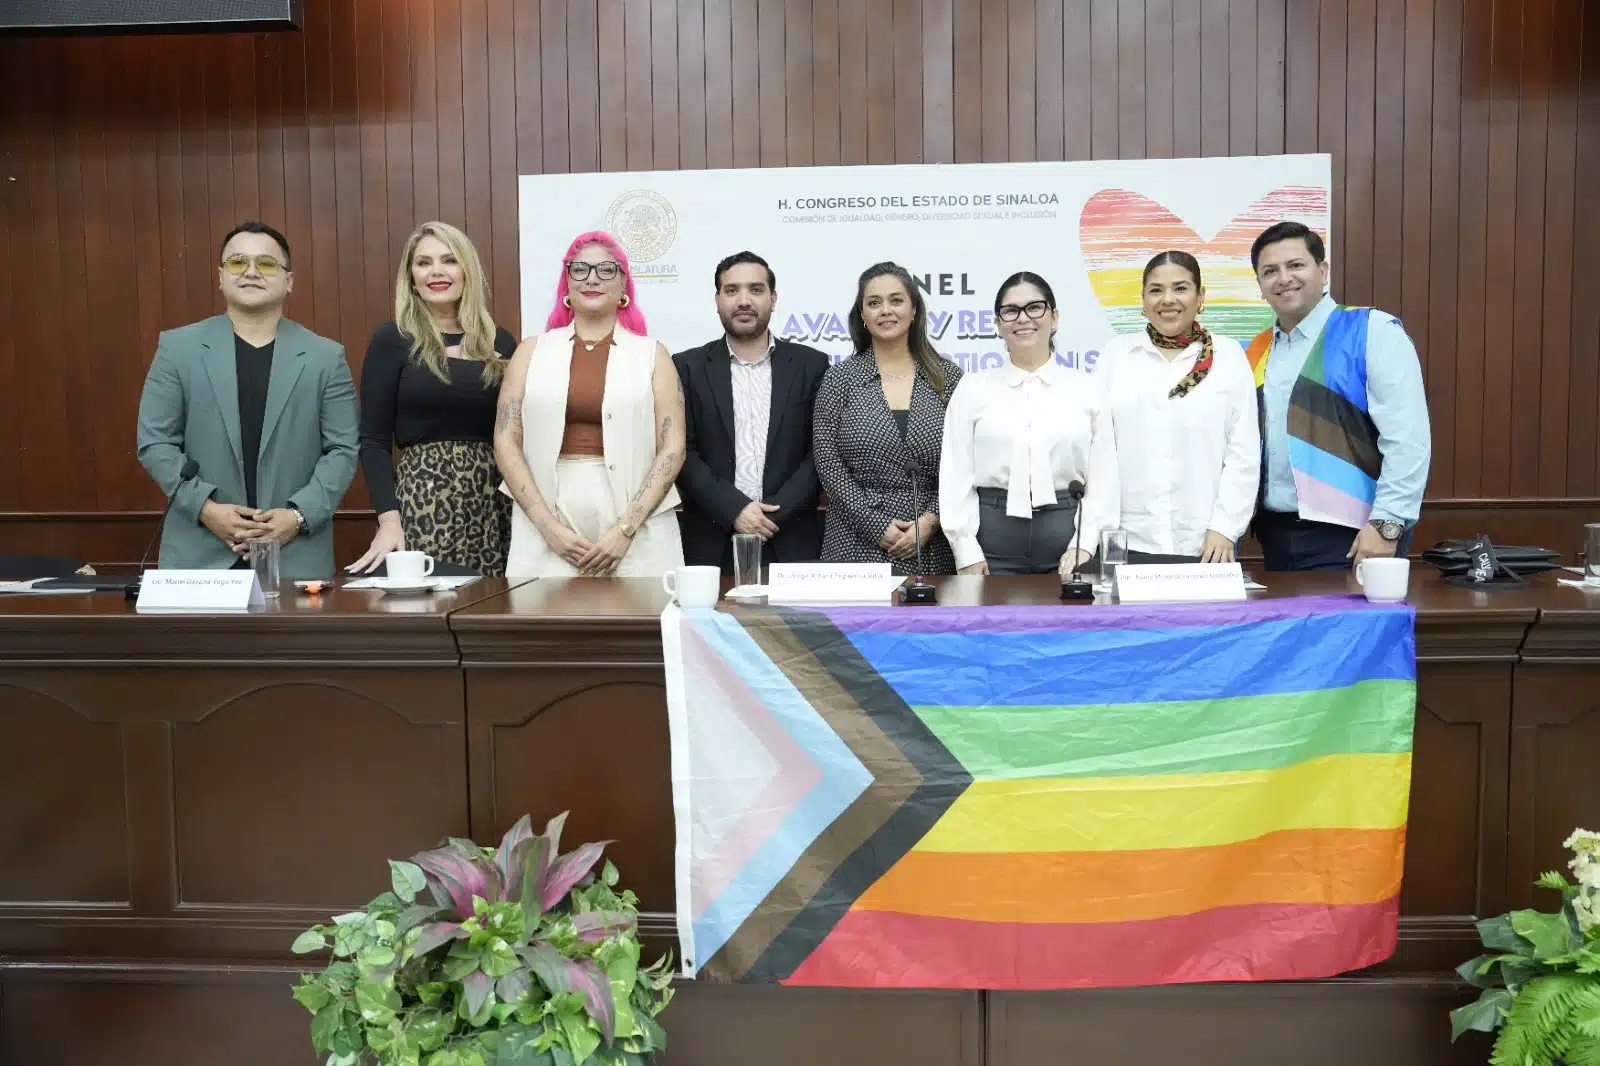 Participantes del panel “Avances y retos de la población LGBTIQ+ en Sinaloa” en el salón Constituyentes de 1917 del Congreso del Estado de Sinaloa